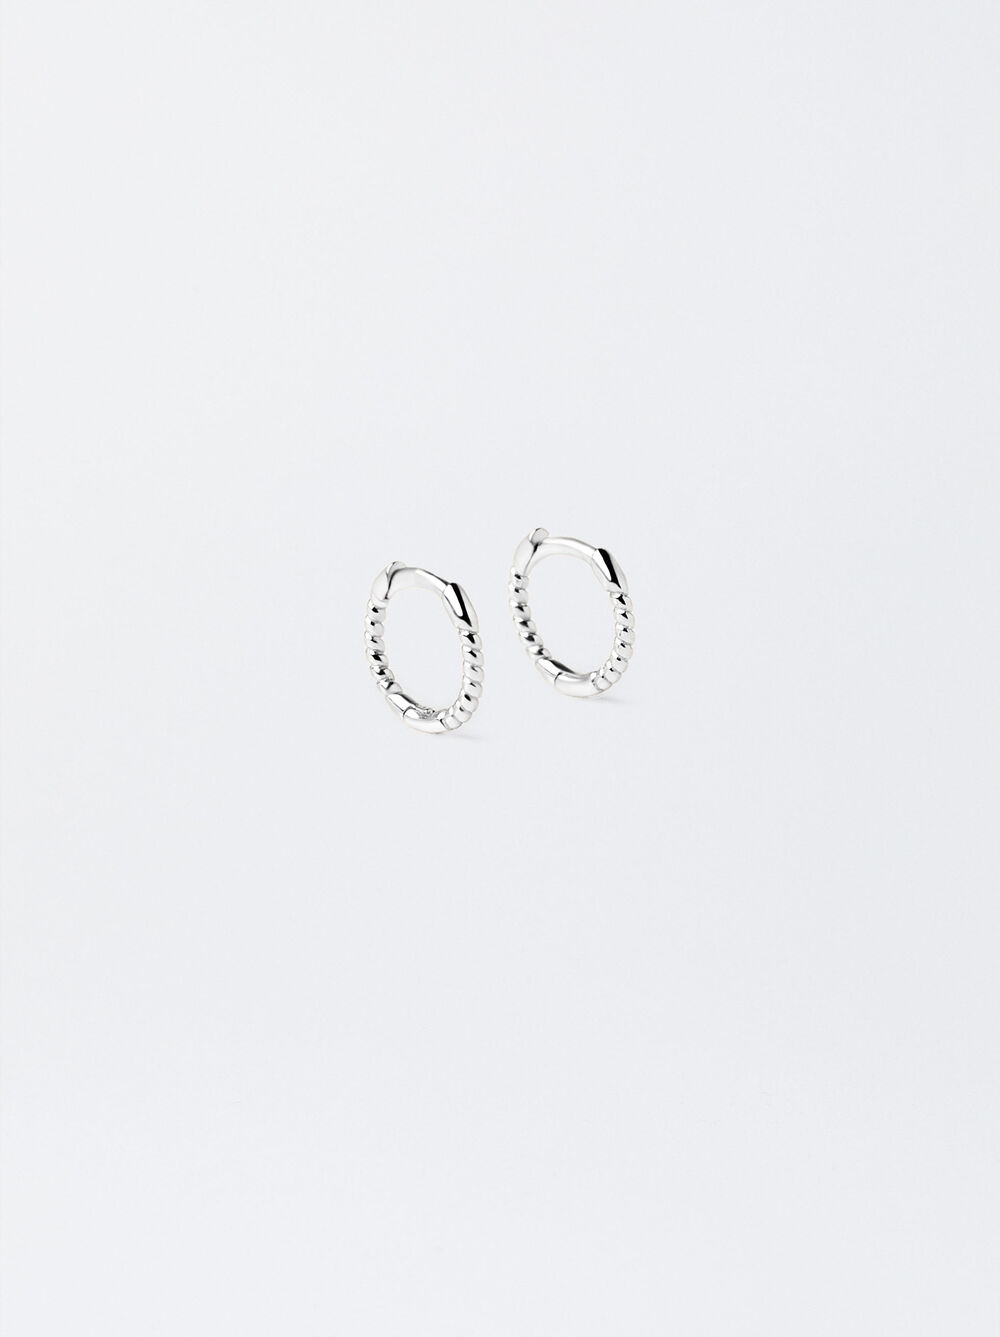 925 Silver Hoop Earrings